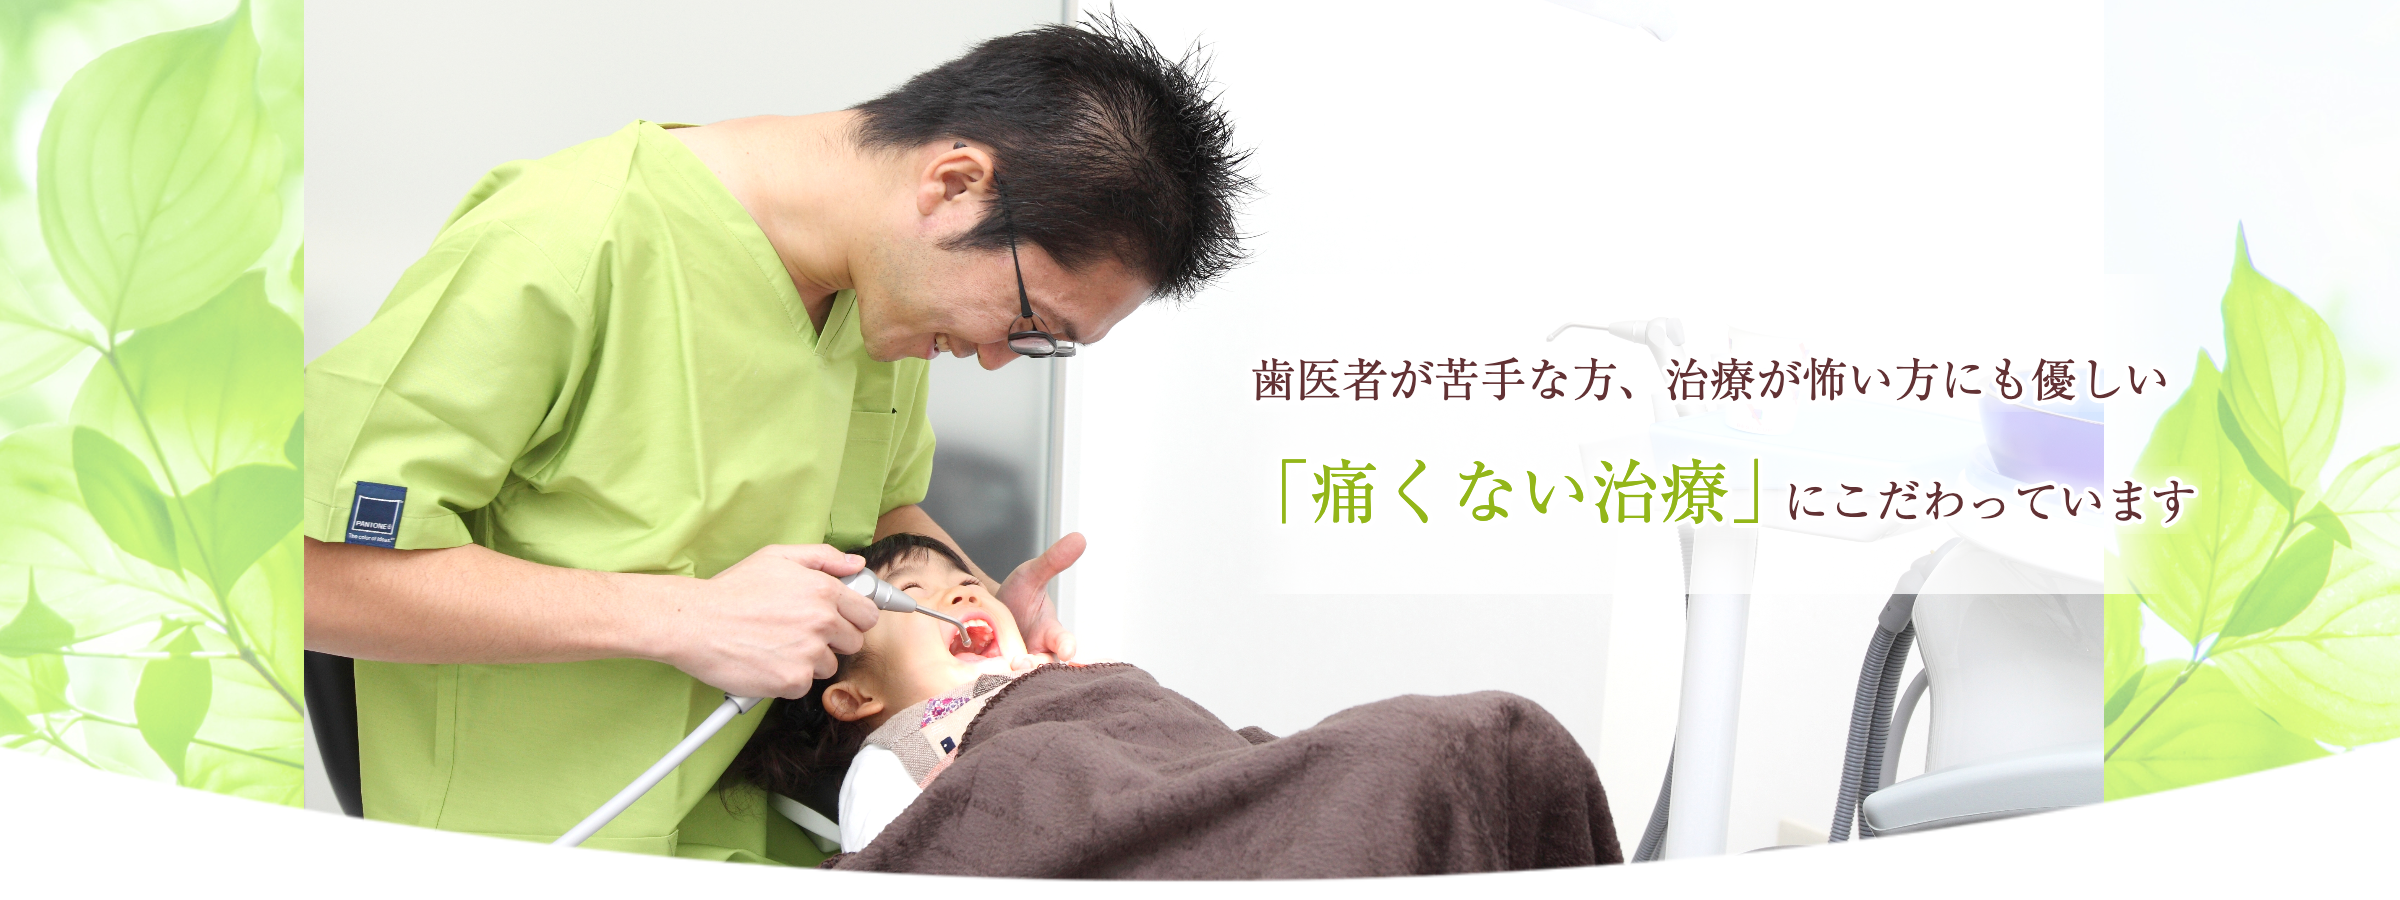 墨田区鐘ヶ淵の歯医者カルミアデンタルクリニック痛くない治療にこだわっています